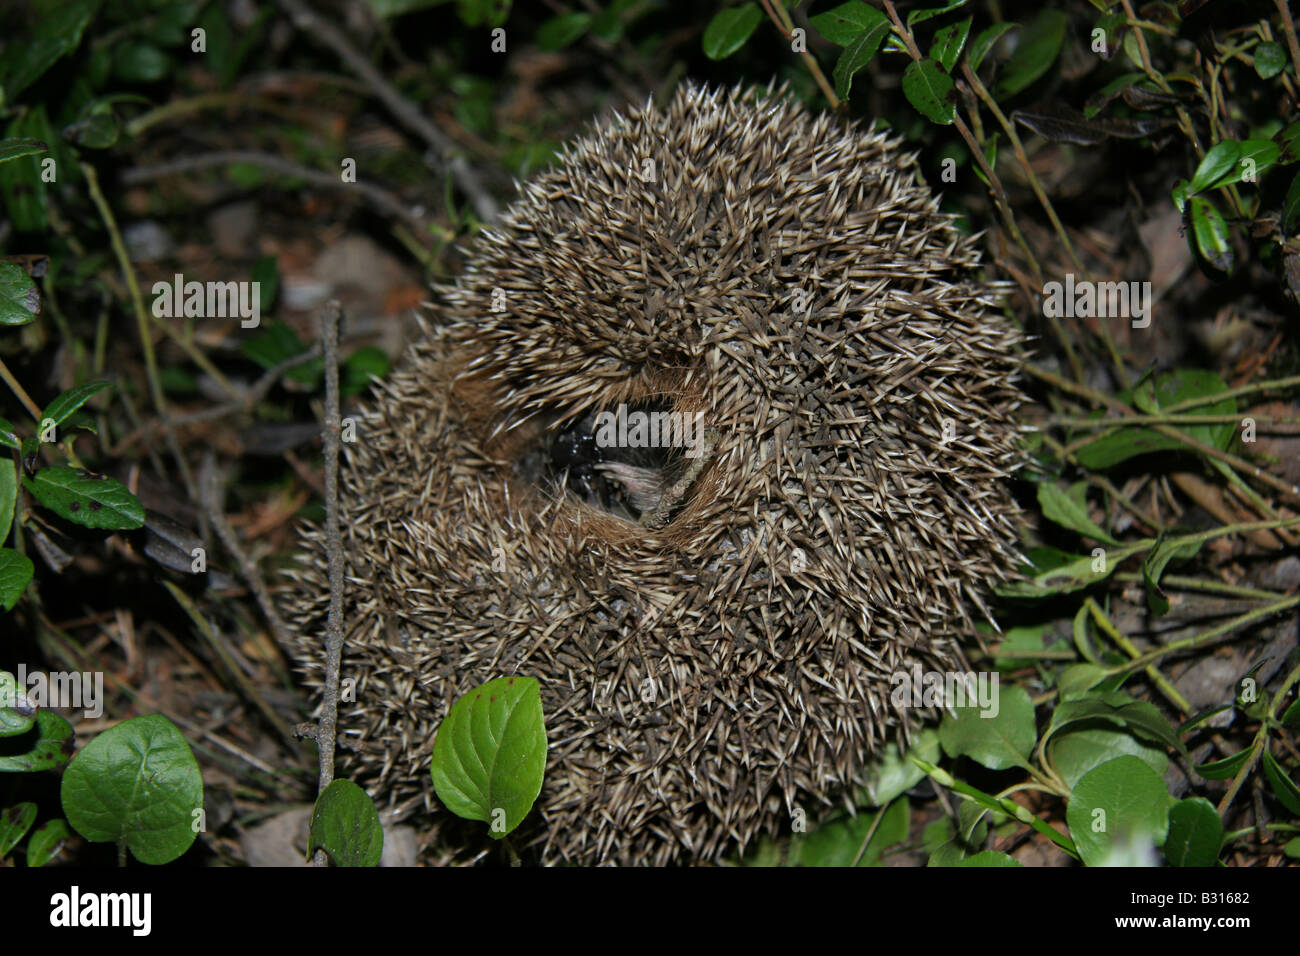 Une forêt hedgehog sur le côté d'adopter une position défensive roulés dans une boule serrée avec ses épines en saillie. Banque D'Images